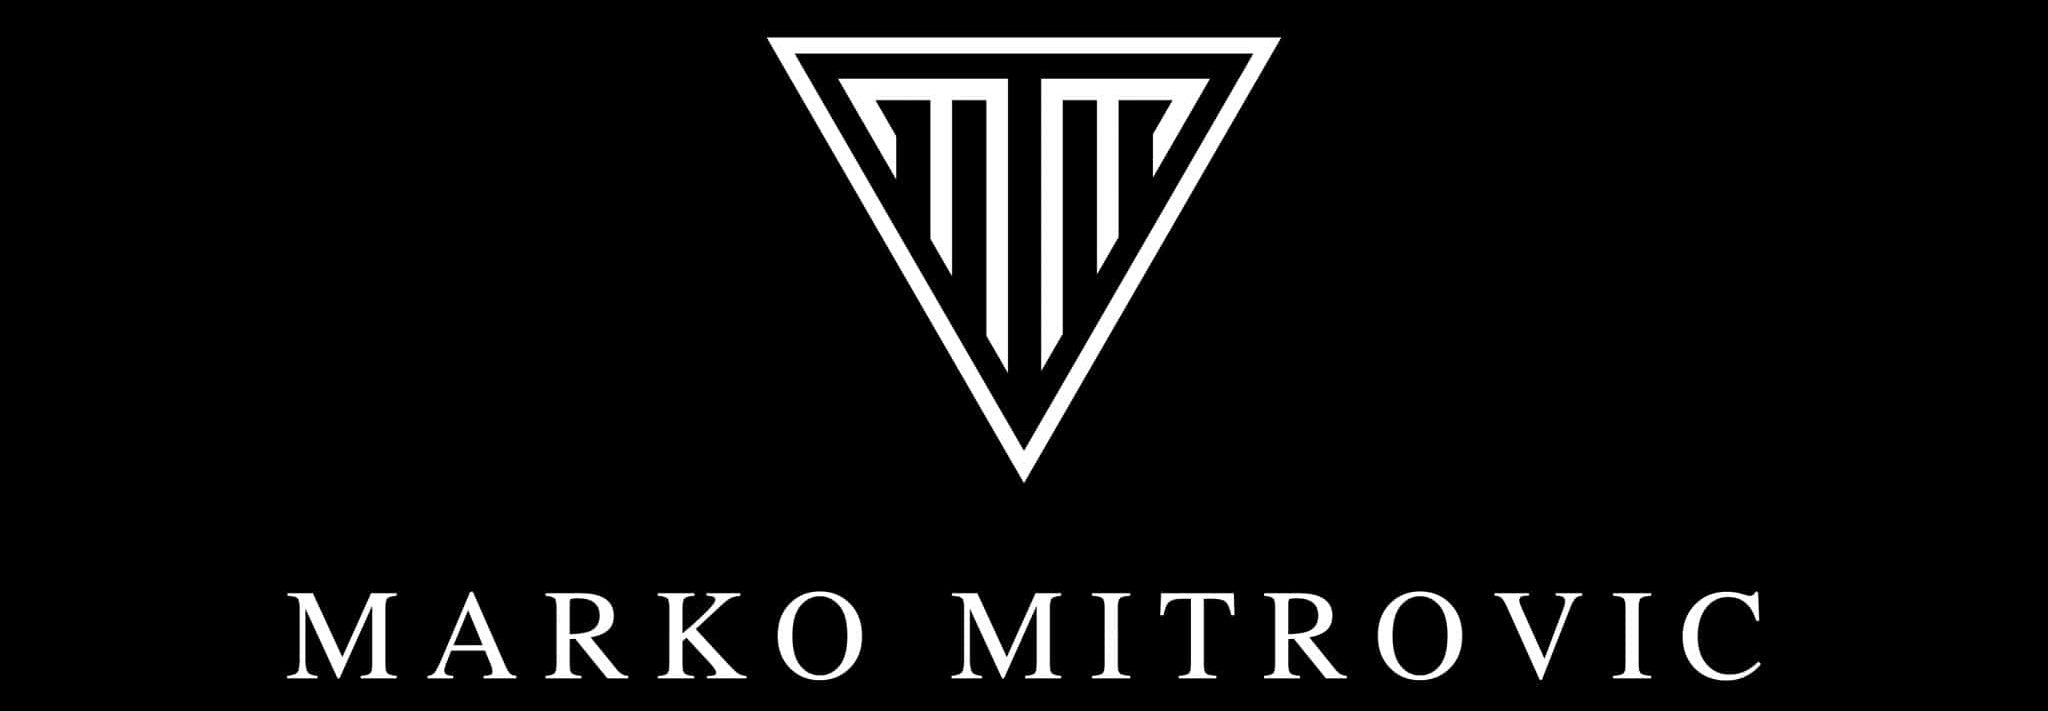 Marko Mitrovic Logo